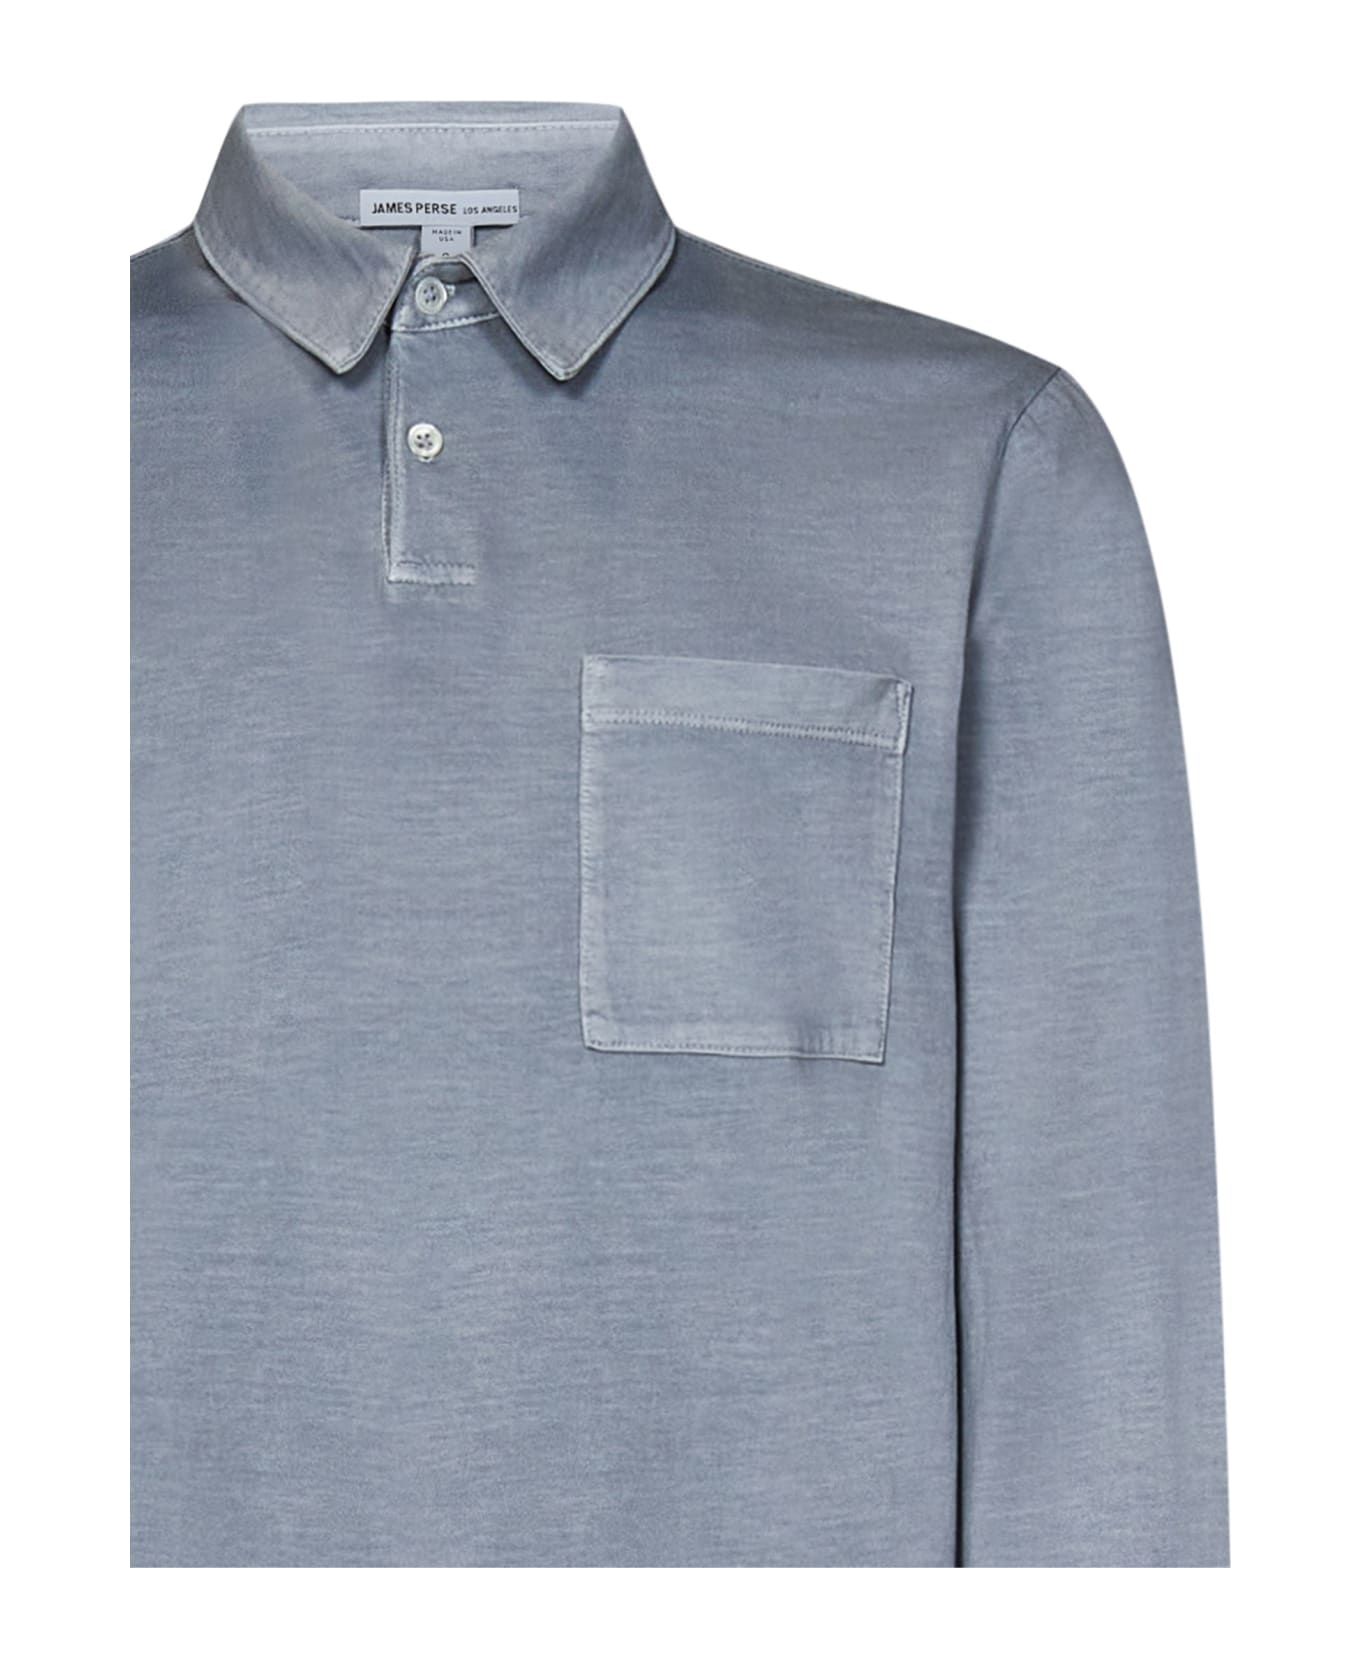 James Perse Polo Shirt - Grey